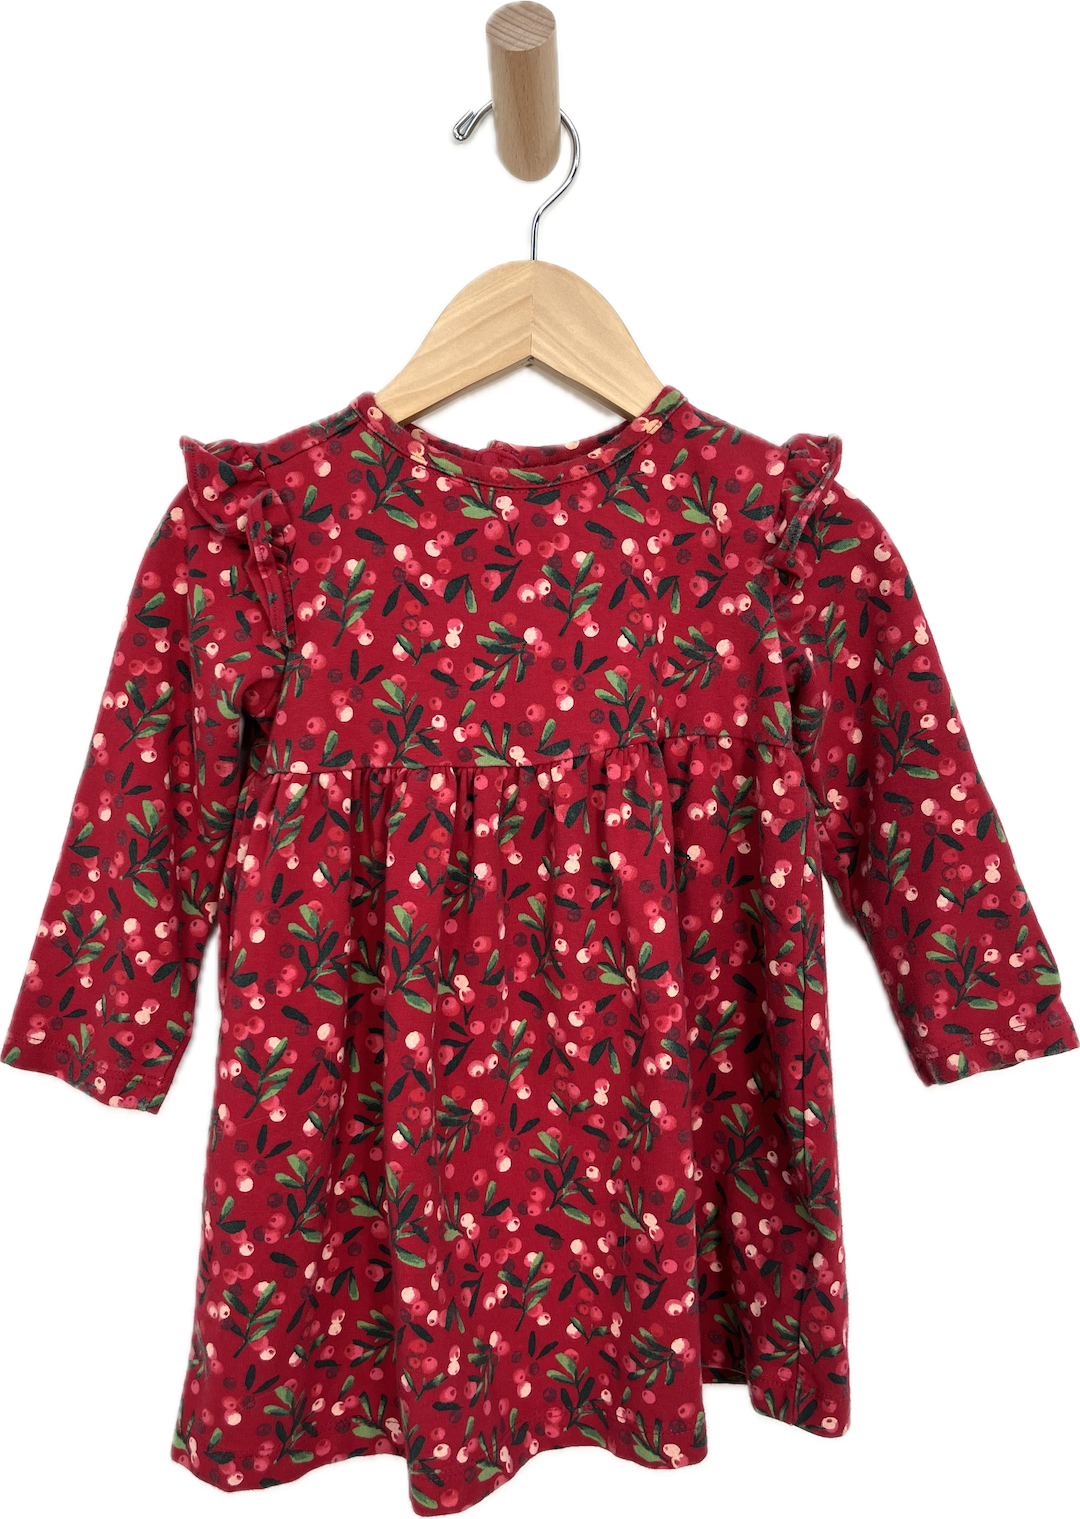 red ruffle dress cotton dress 18-24m